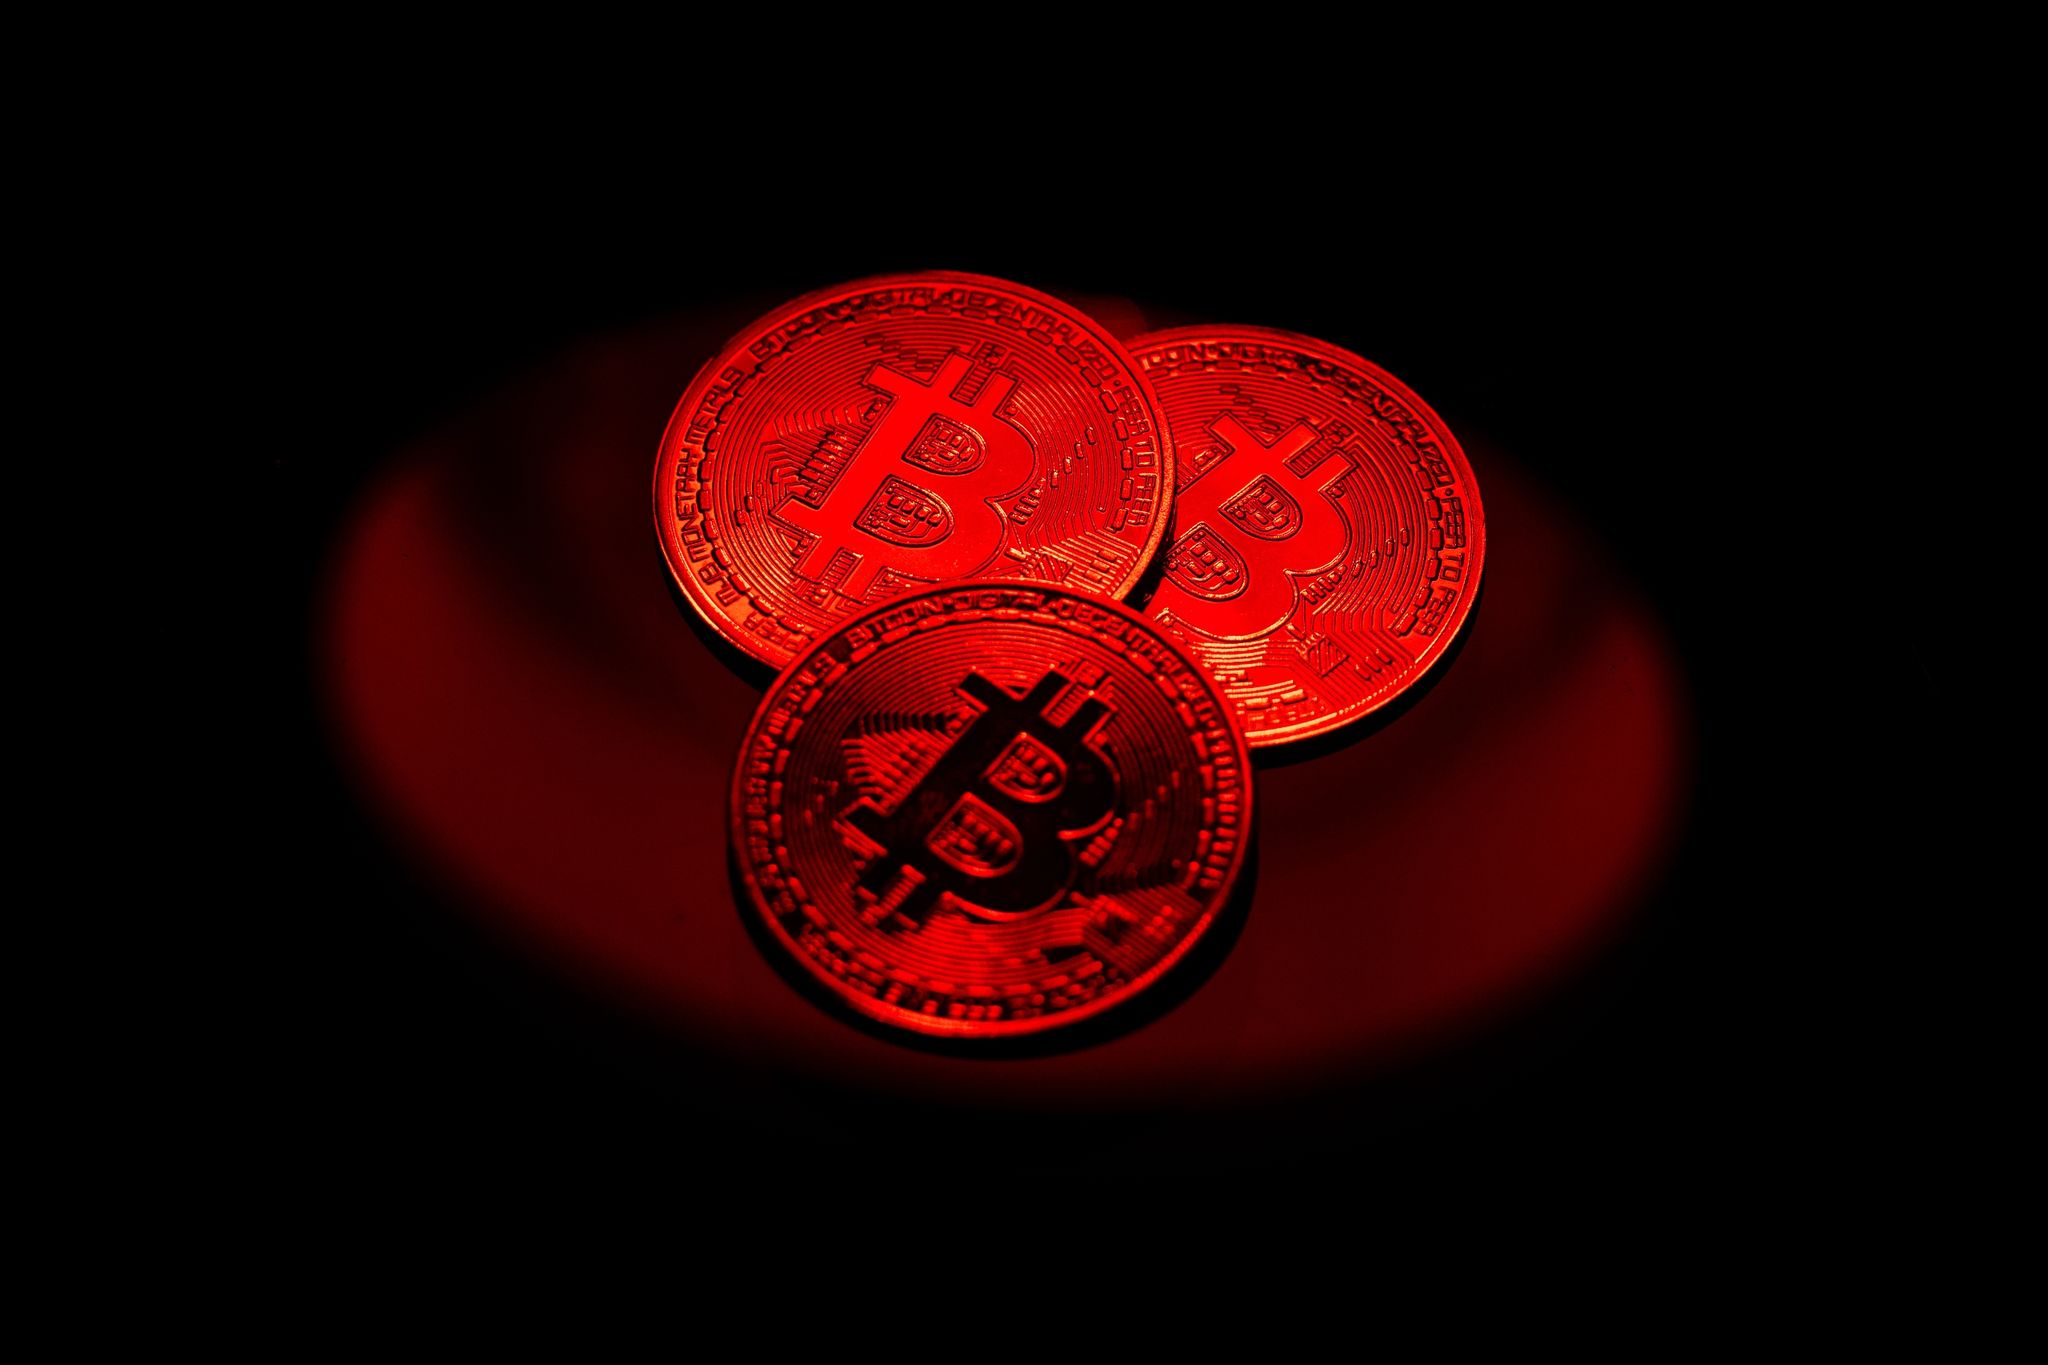 Einige Kryptowährungen haben in den vergangenen Jahren bemerkenswerte Renditen erzielt. So auch etwa der Bitcoin, die bekannteste digitale Währung.